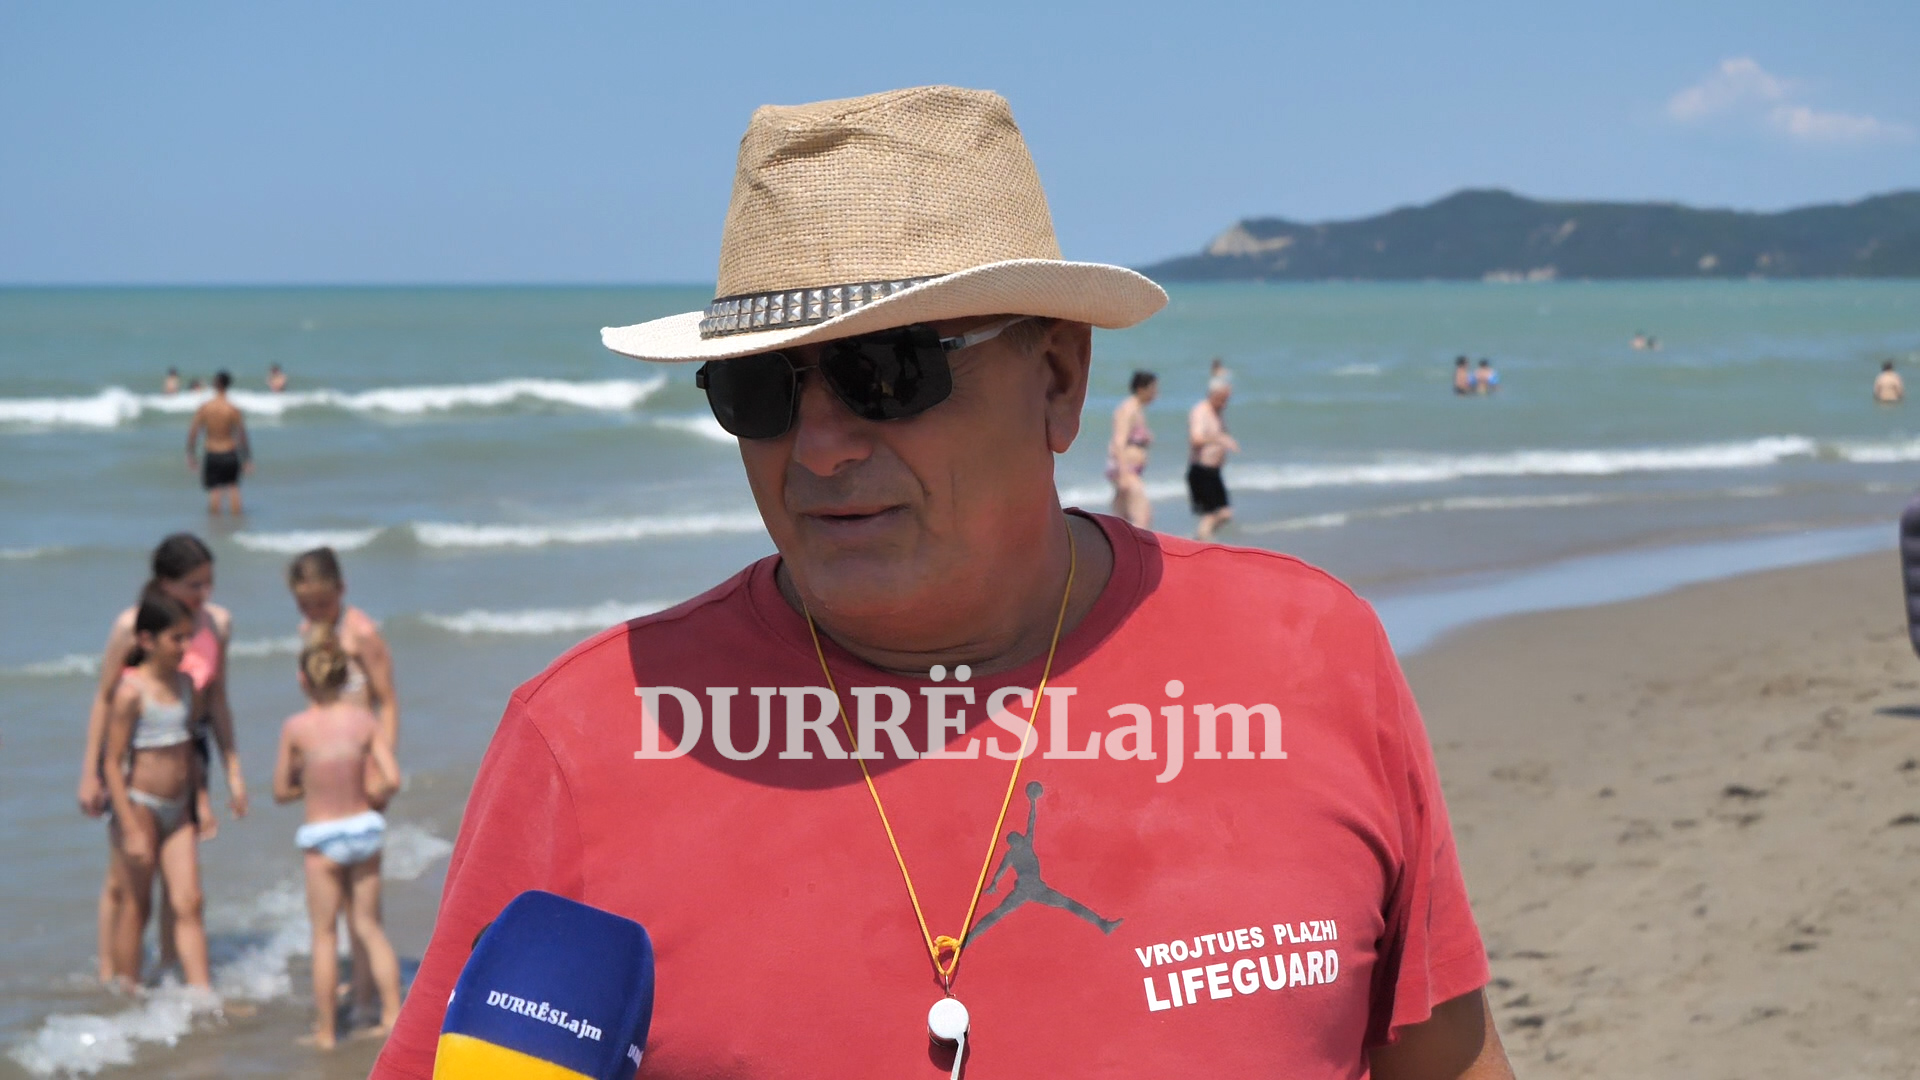 “Shqiptarët janë të padisiplinuar!” Vrojtuesi i plazhit rendit vështirësitë e punës (VIDEO)